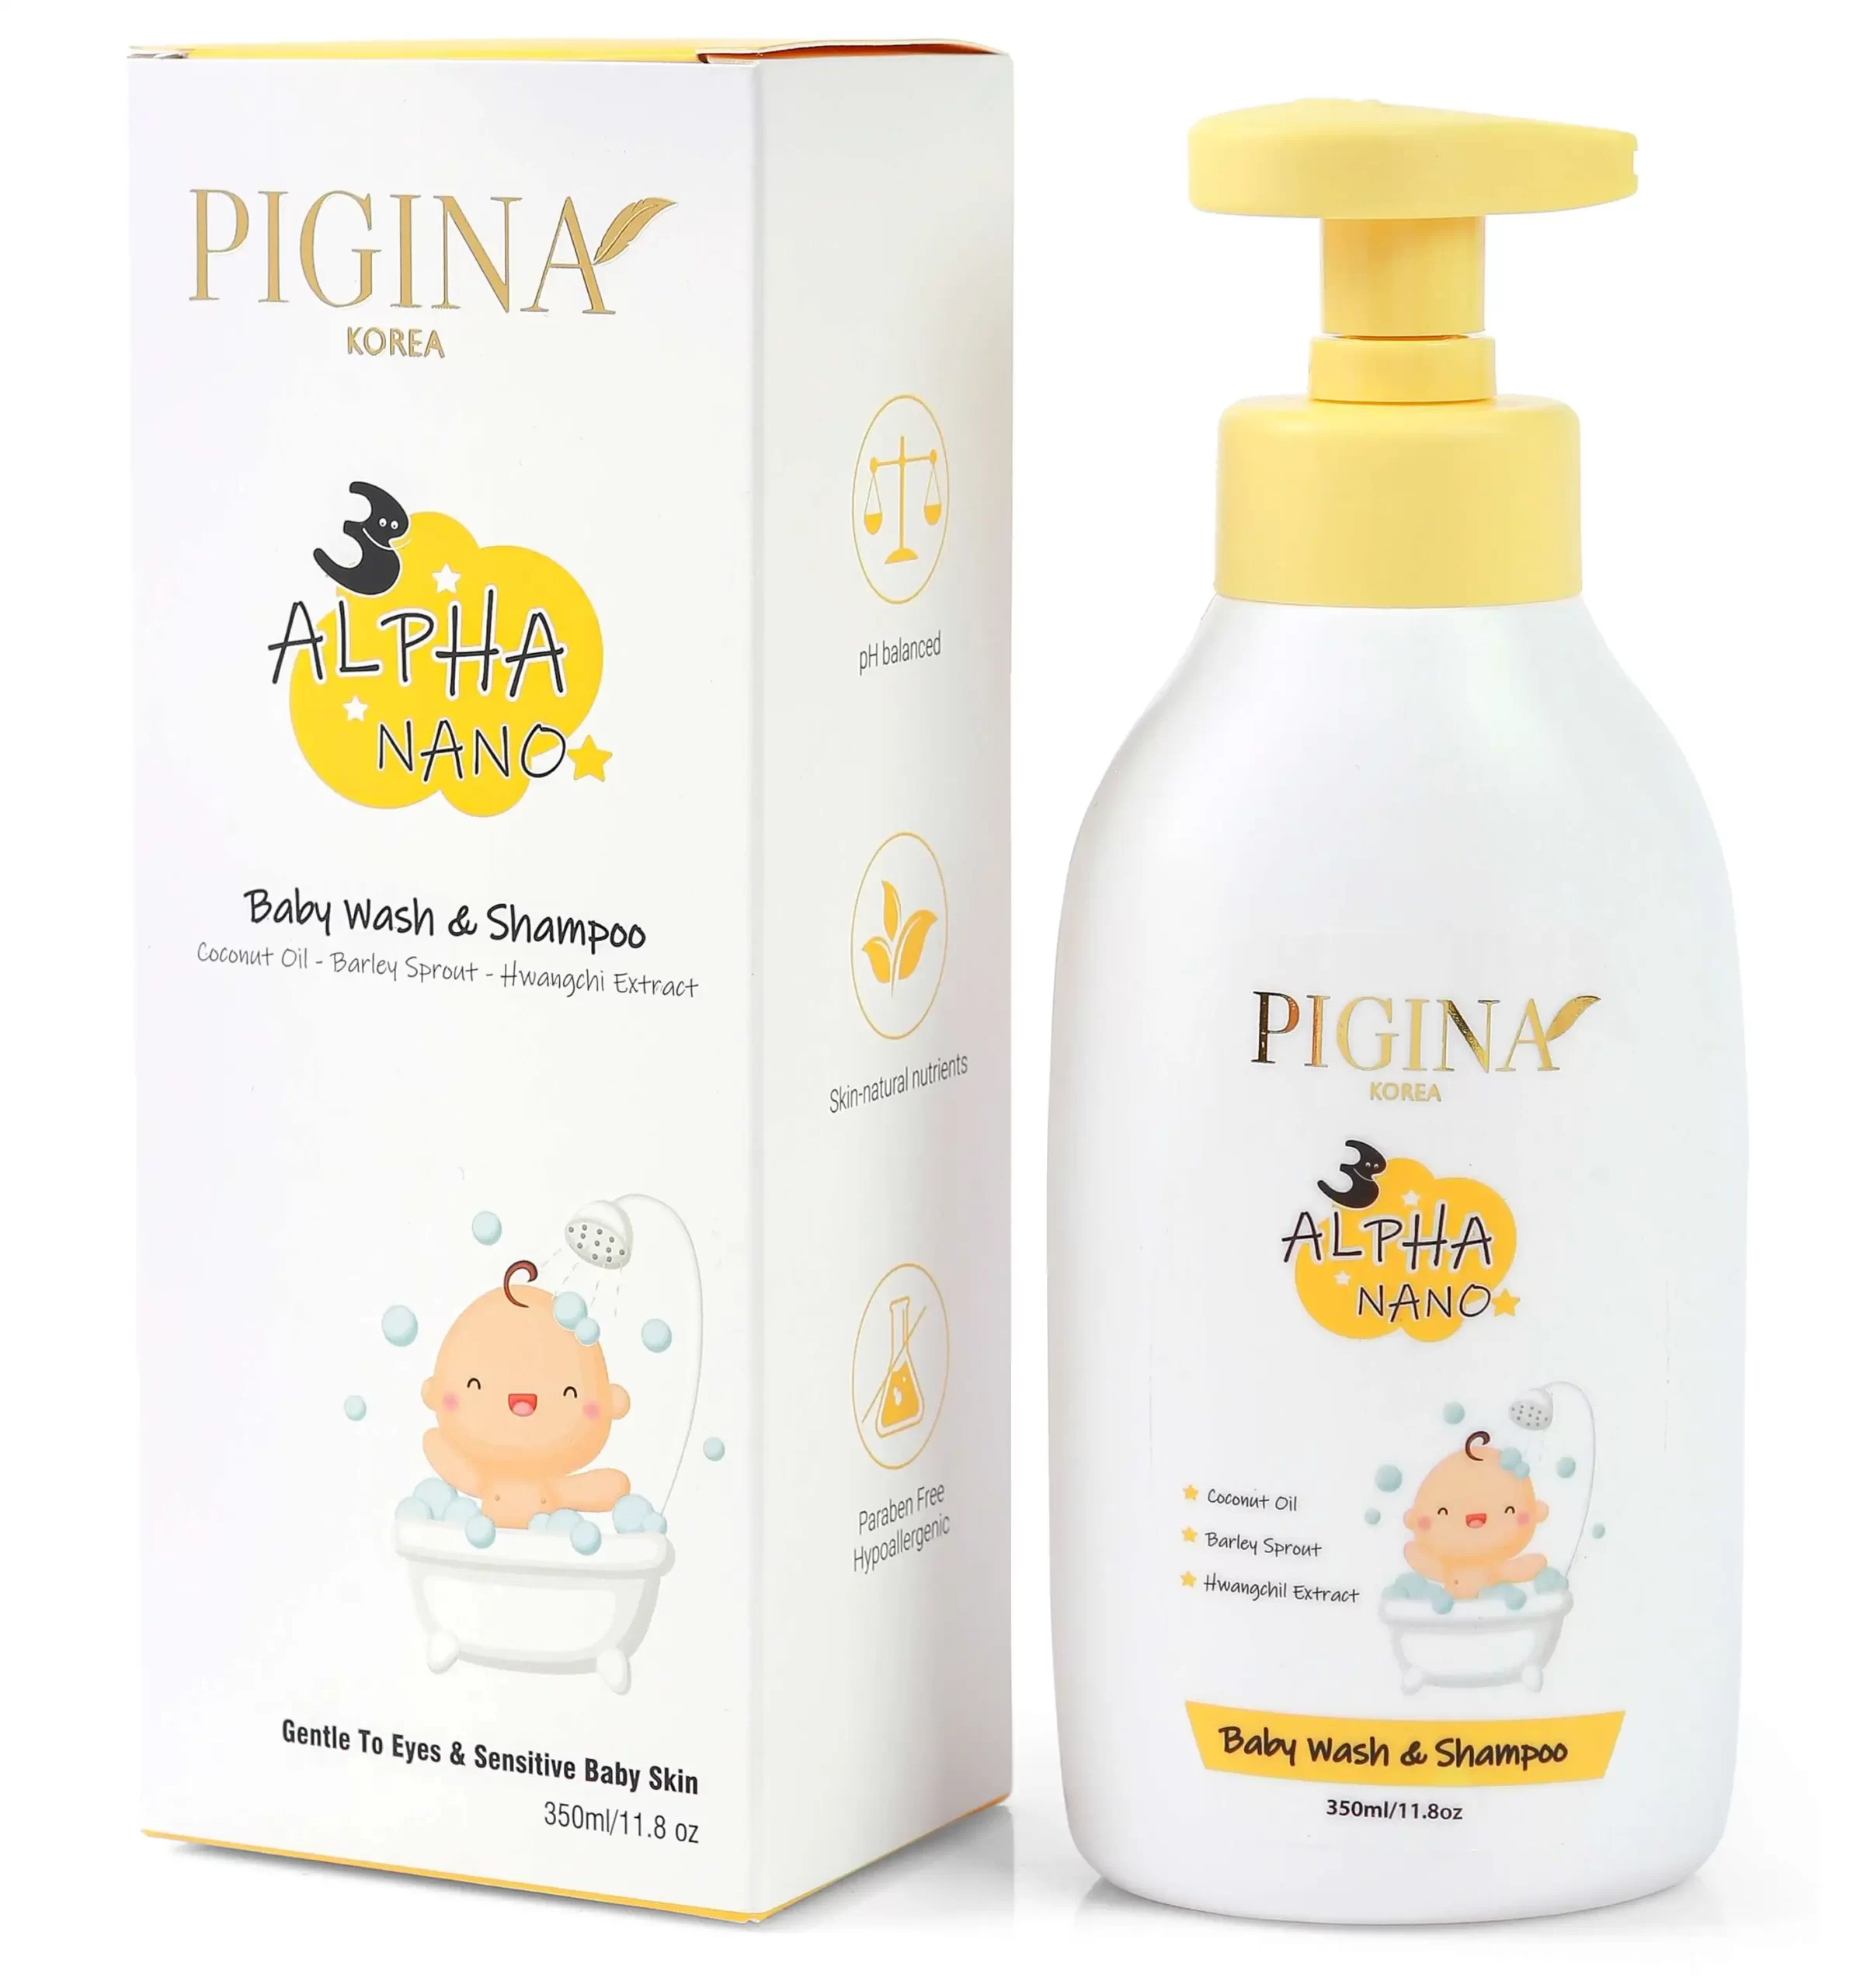 Sữa tắm gội cho bé Pigina Baby Wash & Shampoo 350ml chính hãng giá tốt - DroppiiShops